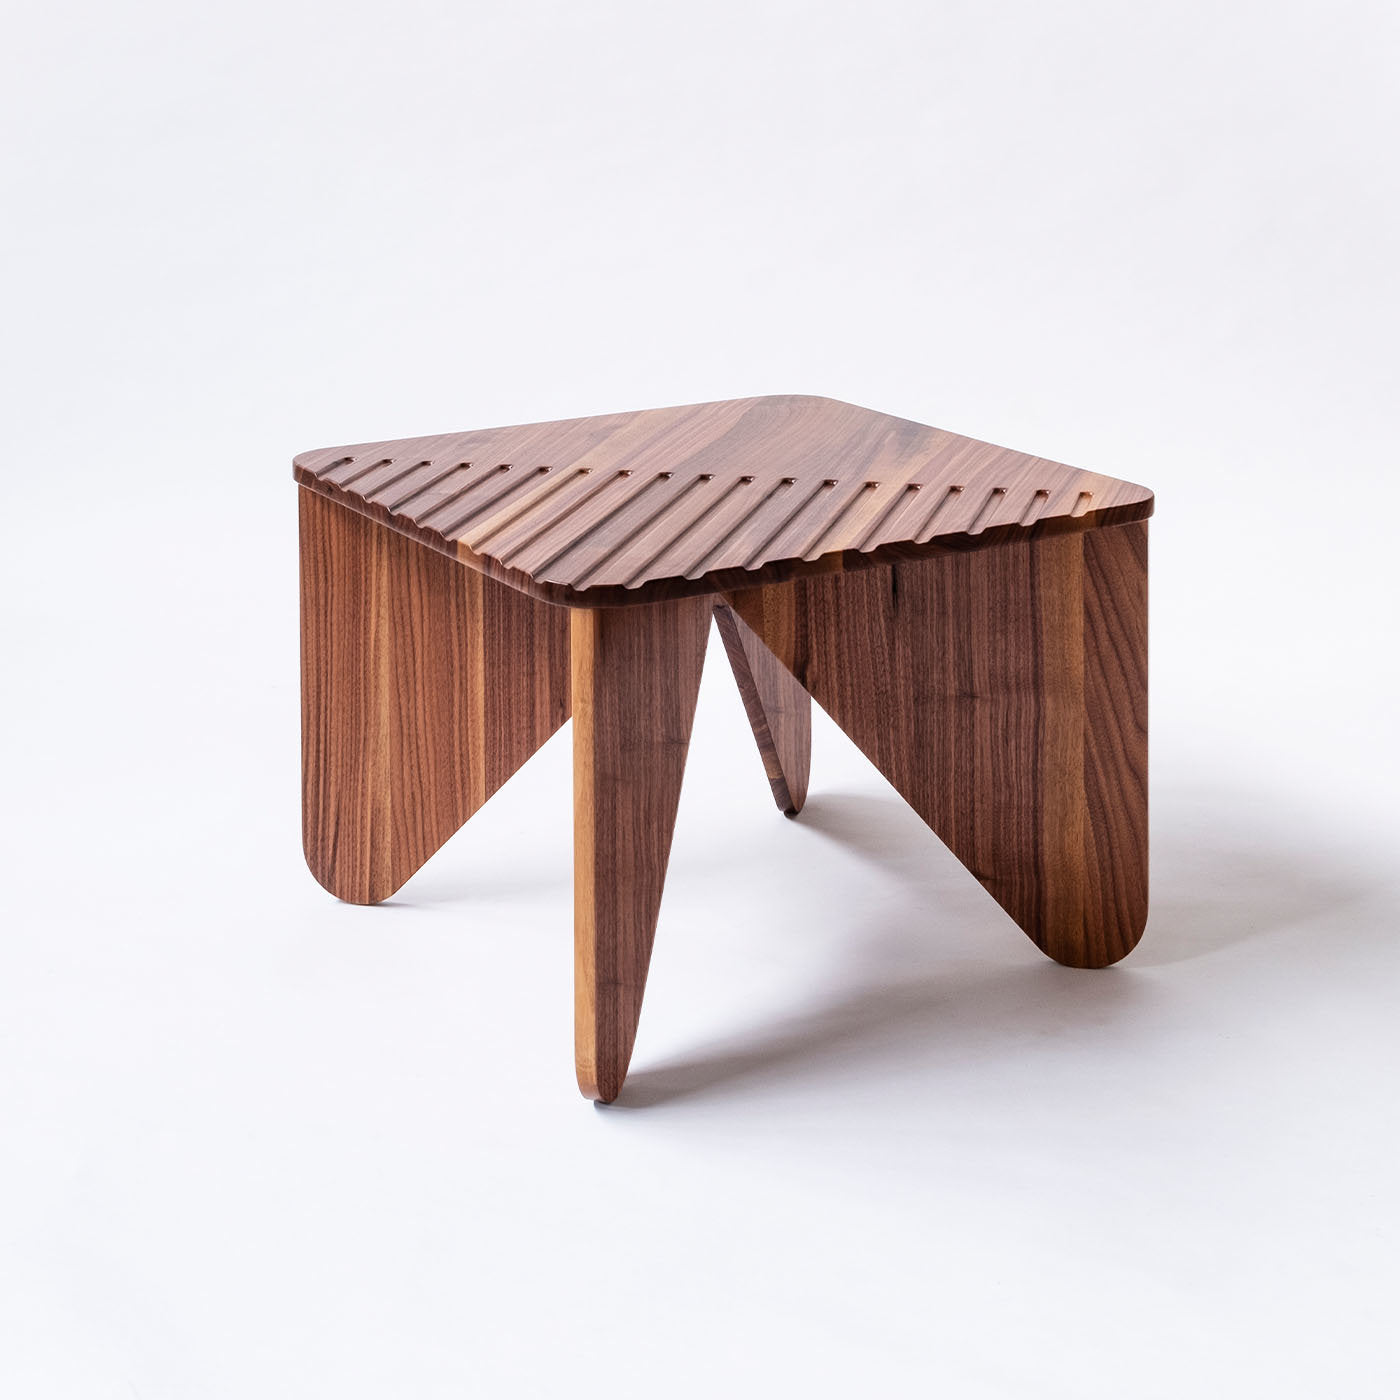 Yoko Medium Low Table by Serena Confalonieri - Alternative view 1